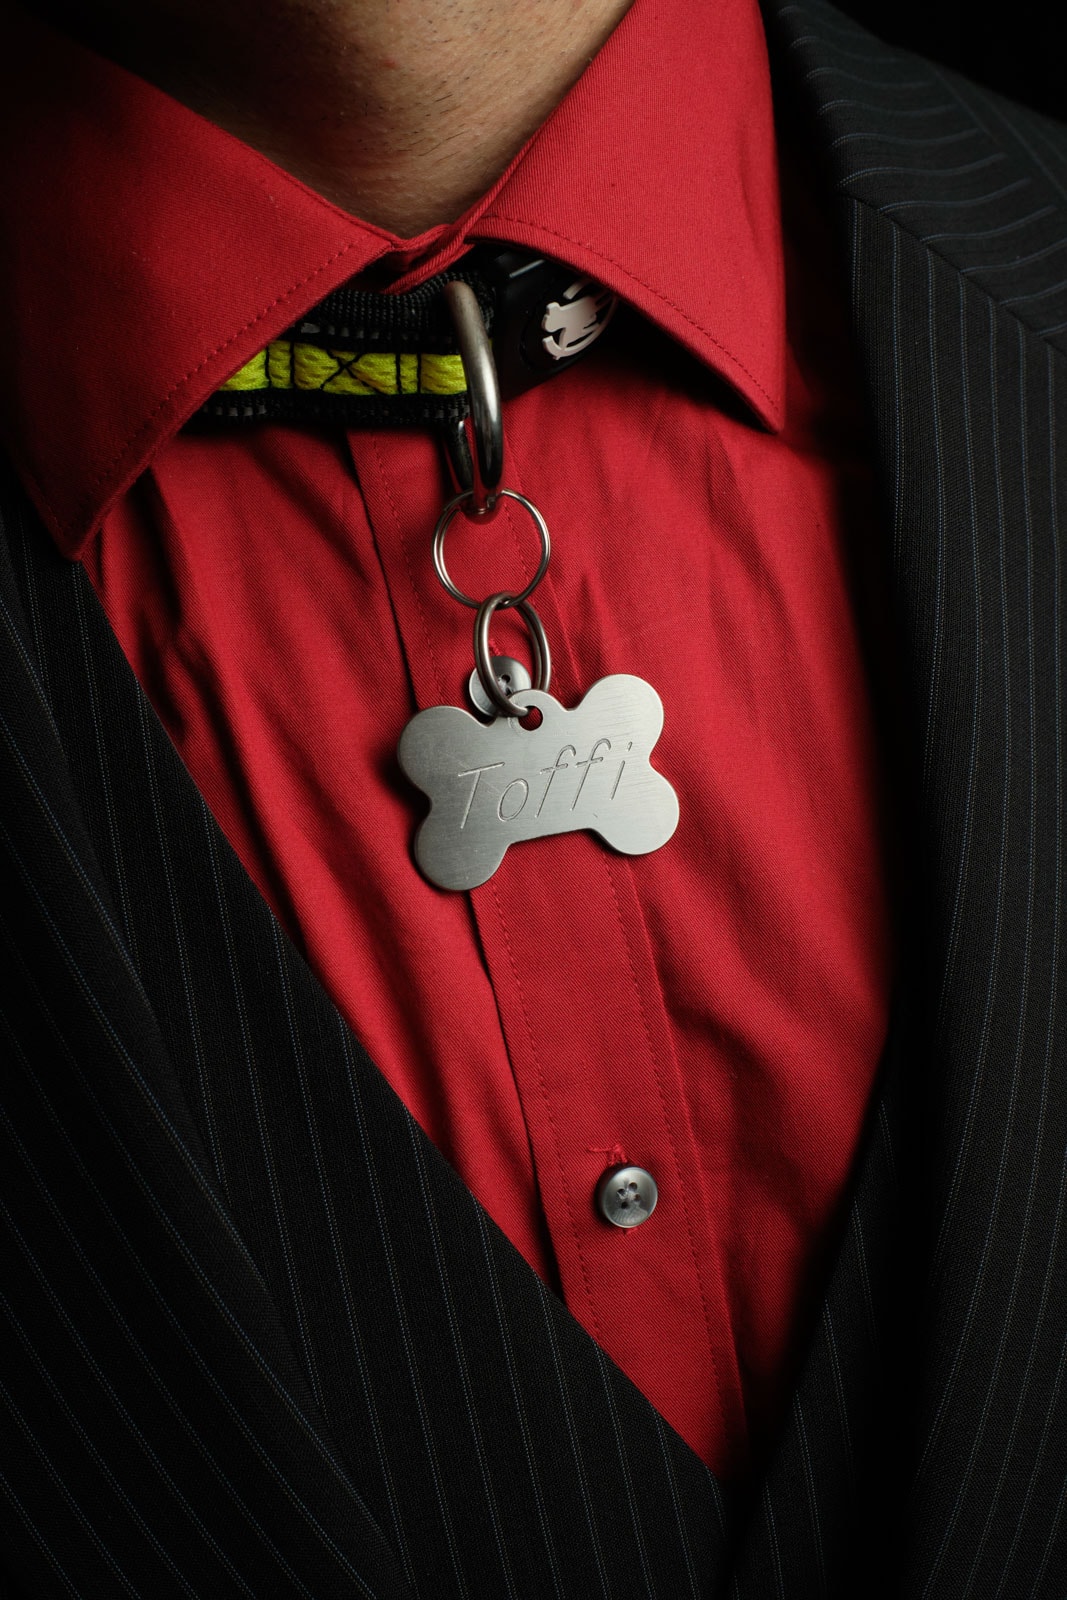 Die Detailaufnahme zeigt Pup Toffi, im roten Hemd, an seinem Halsband hängt ein silberner Anhänger mit seinem Puppynamen «Toffi» eingraviert. Foto: Stefan Nieland